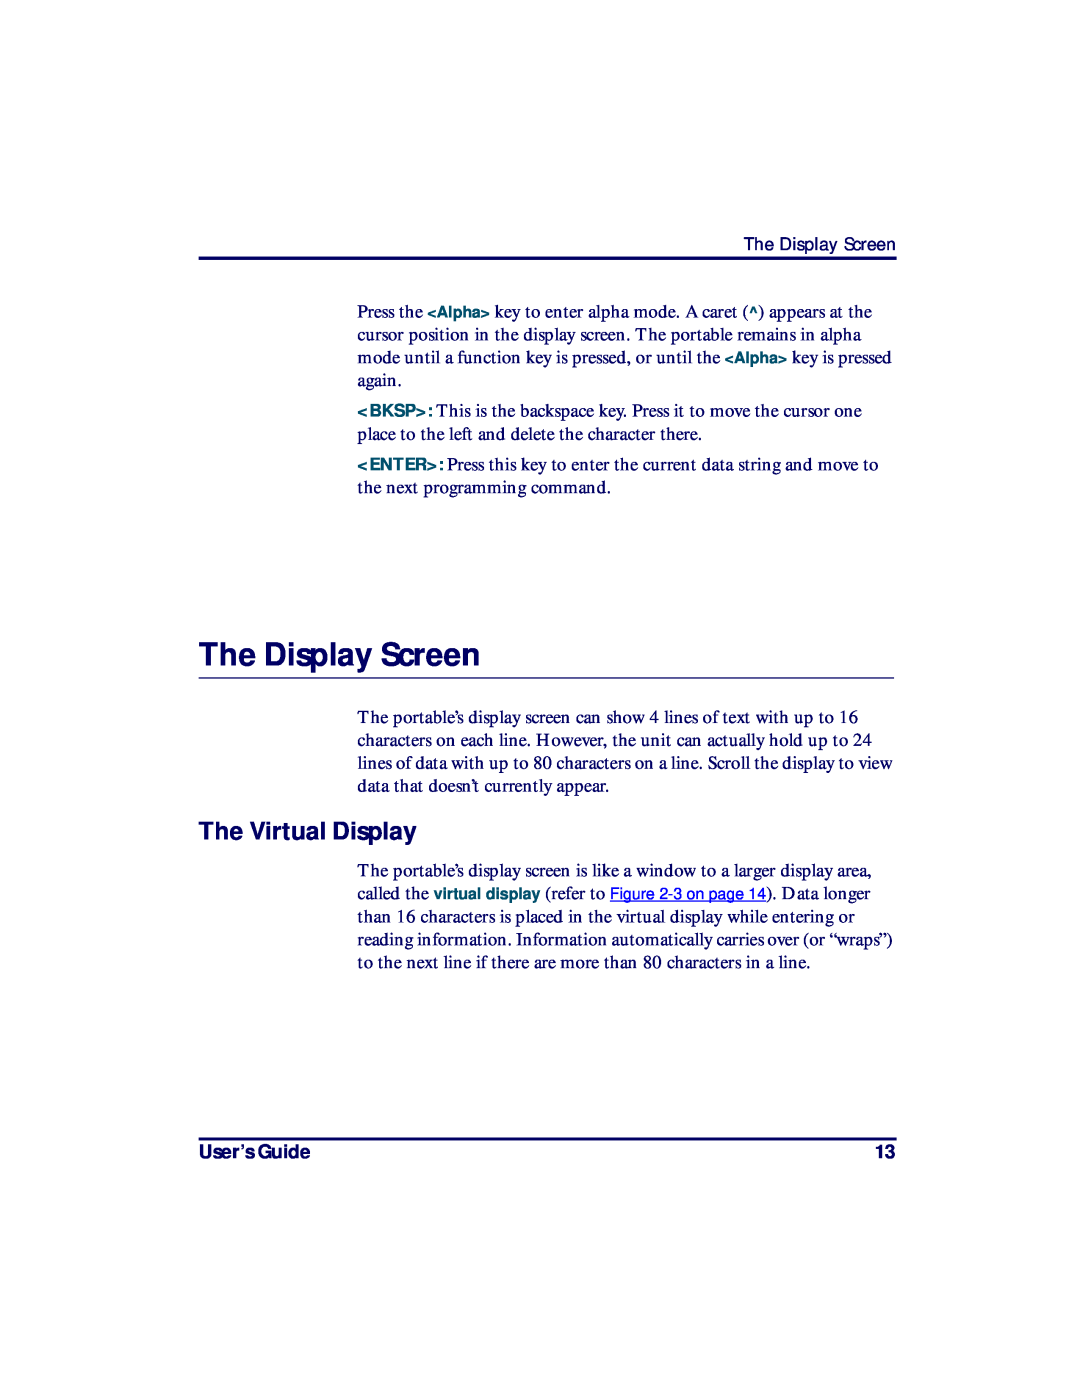 PSC PT2000, TopGun manual The Display Screen, The Virtual Display, User’s Guide 